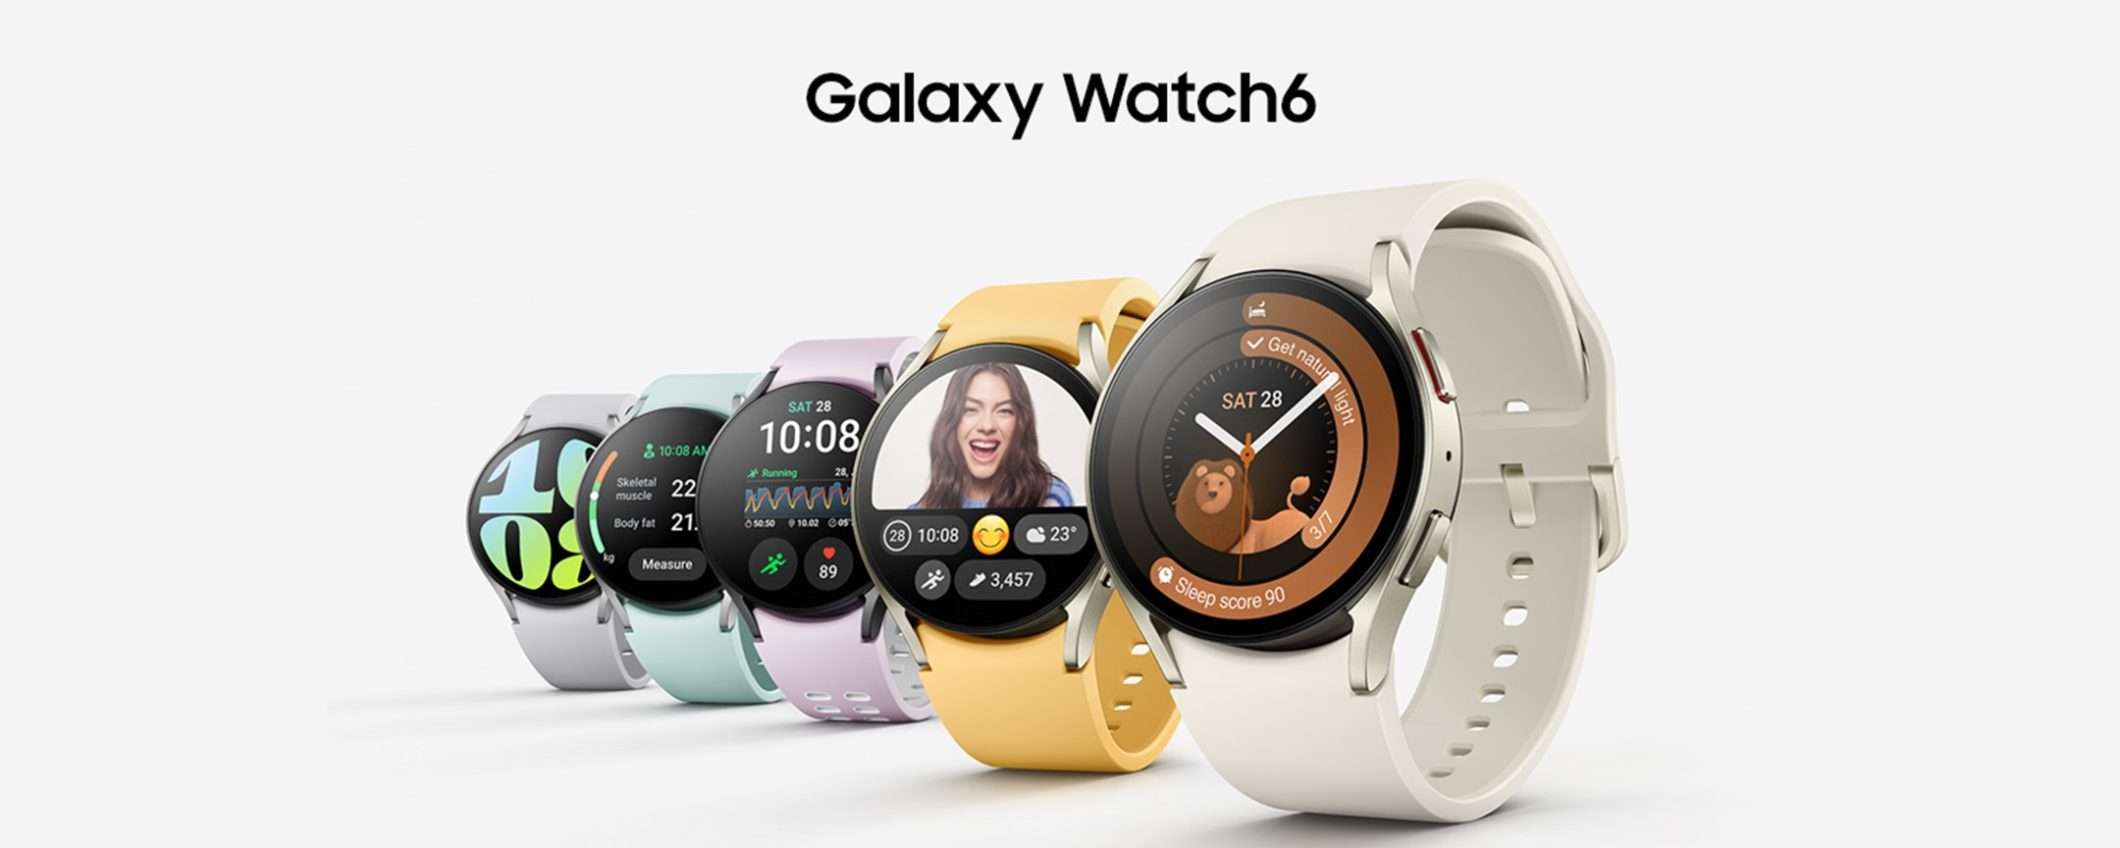 Samsung Galaxy Watch6 LTE: lo sconto del 46% di Amazon lo porta al MINIMO STORICO